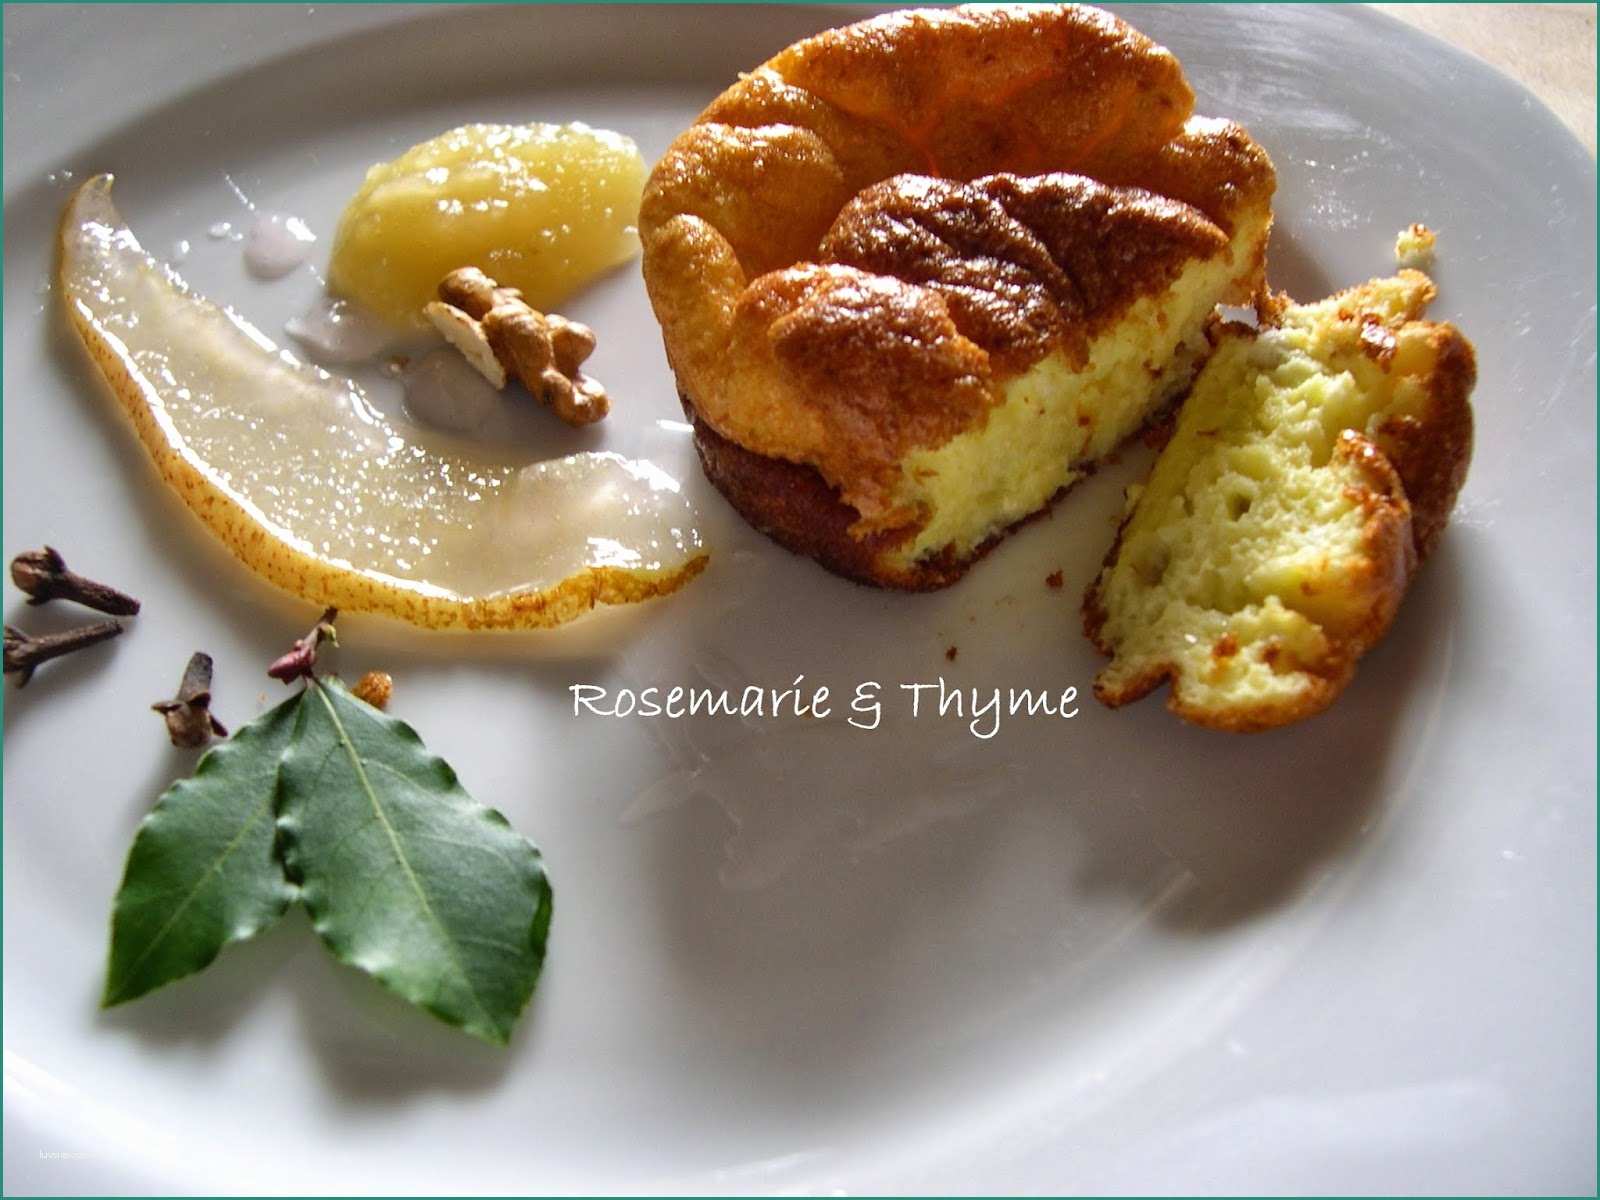 Cheesecake Al Limone Di Benedetta E Rosemarie & Thyme soufflé Al Castelmagno Salsa Di Pere E Patate